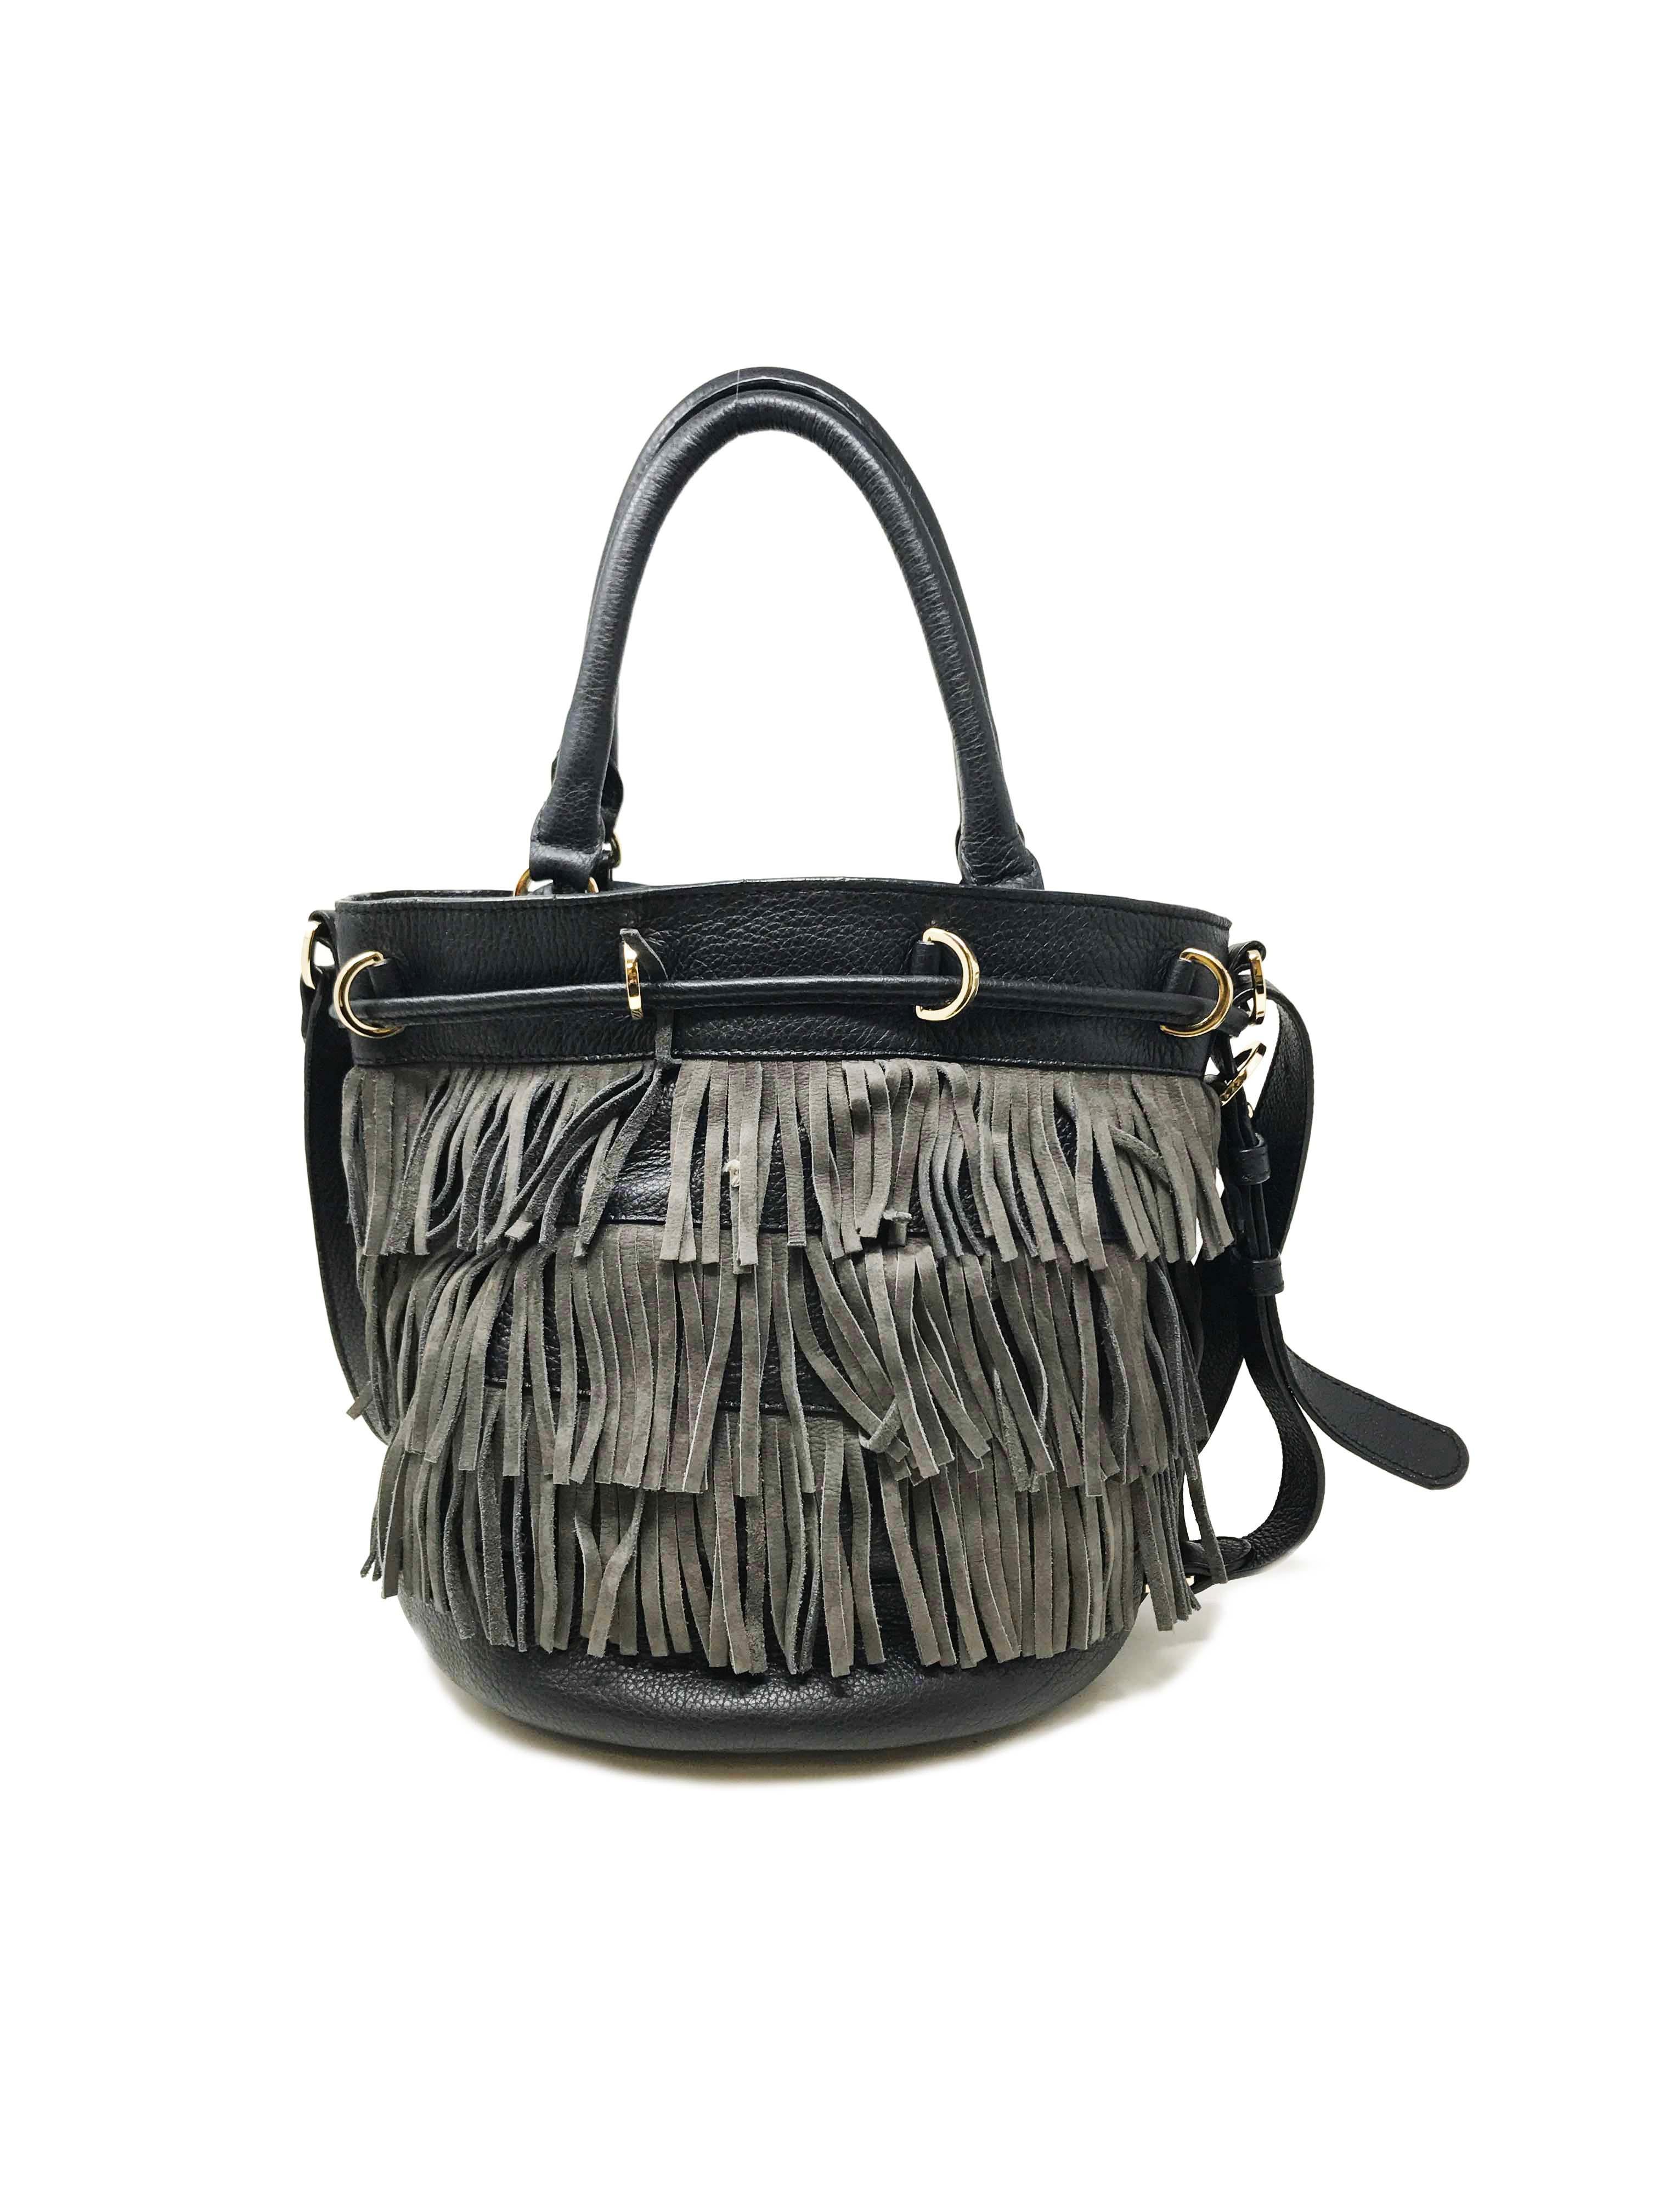  Il s'agit d'un sac à bandoulière See by Chloe en cuir noir pour femme, neuf et sans étiquette. Le sac à poussière est inclus.
Dimensions : L13*H11*D8.5